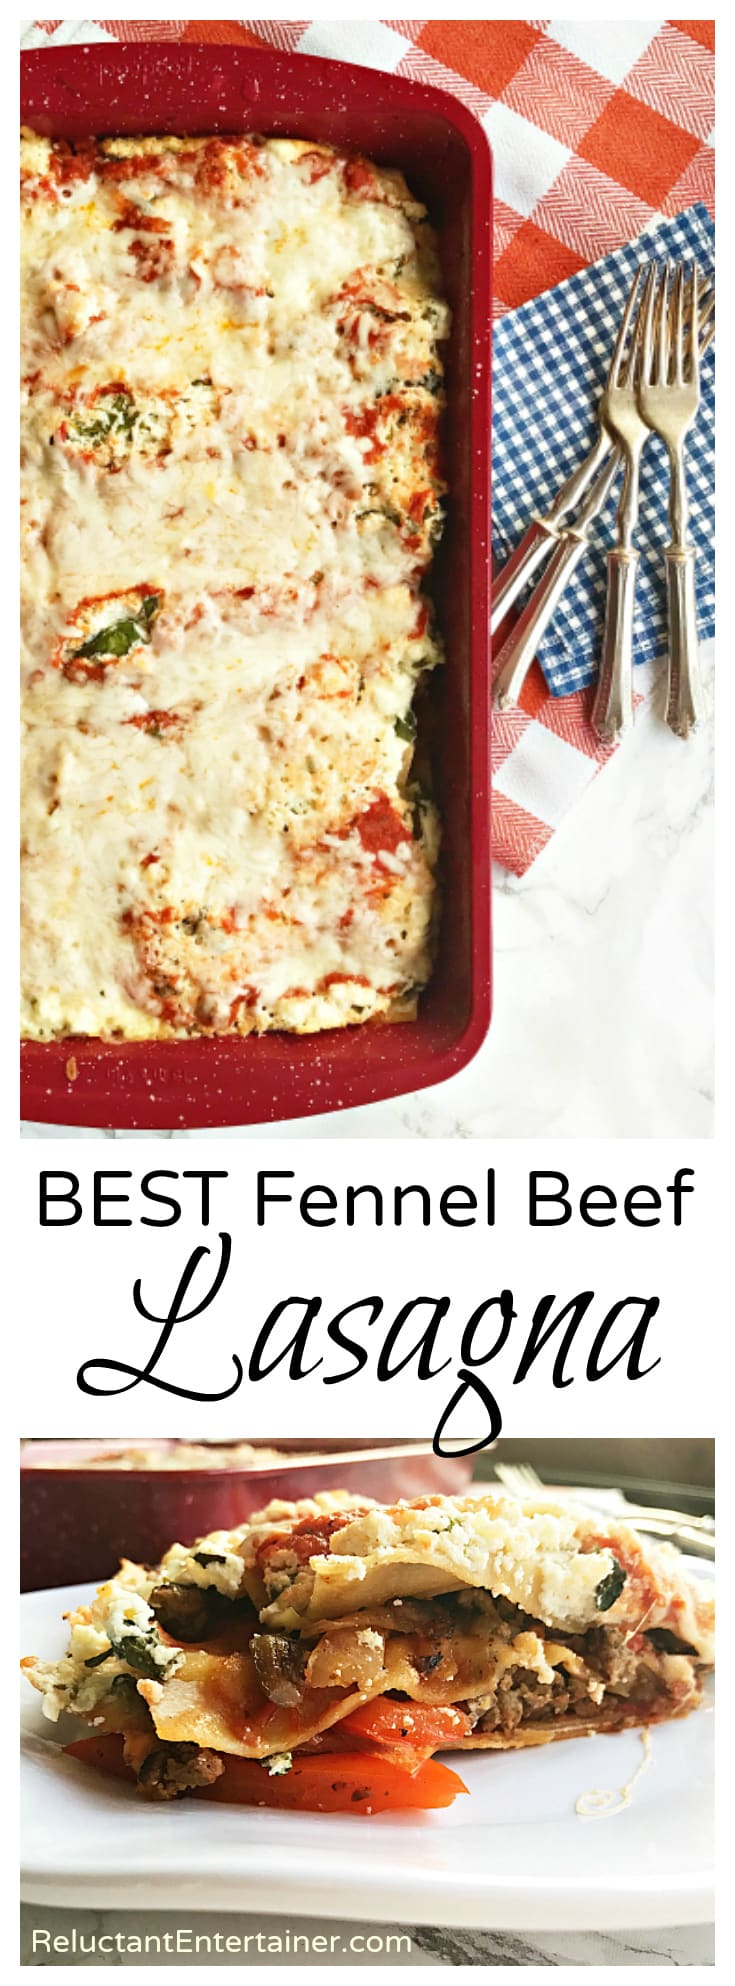 BEST Fennel Beef Lasagna Recipe